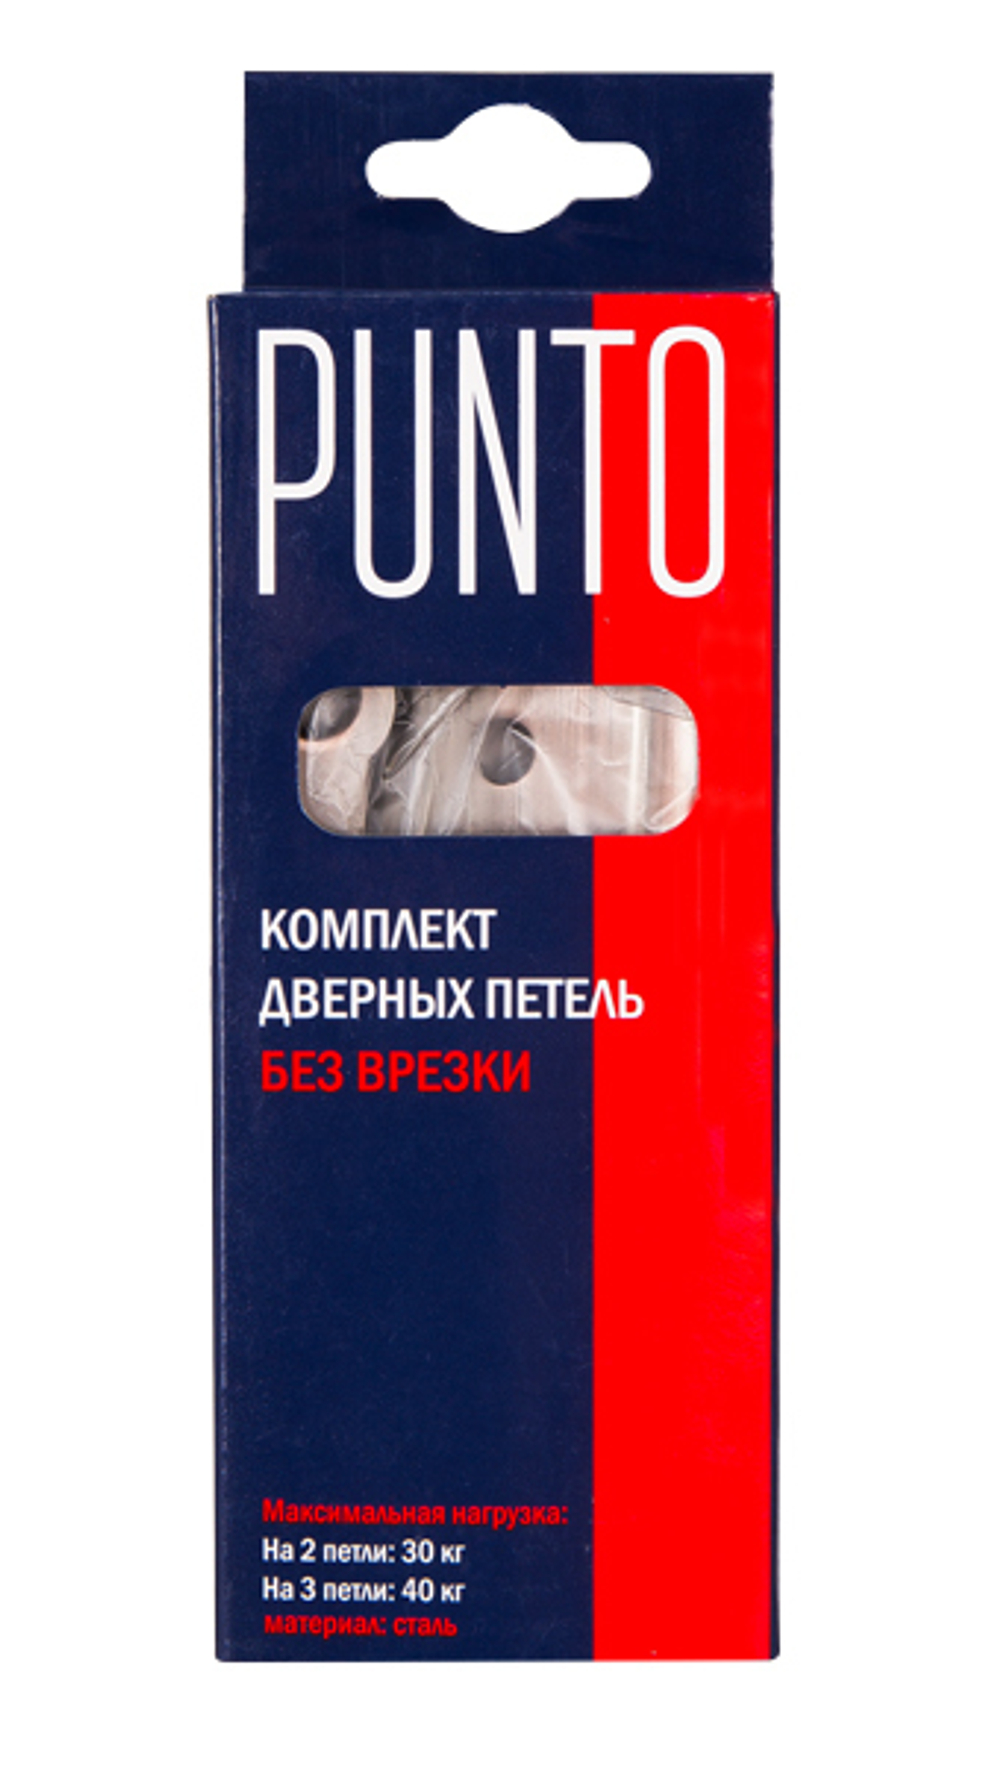 Петля универсальная Punto (Пунто) без врезки 200-2B 100x2,5 AB (бронза)